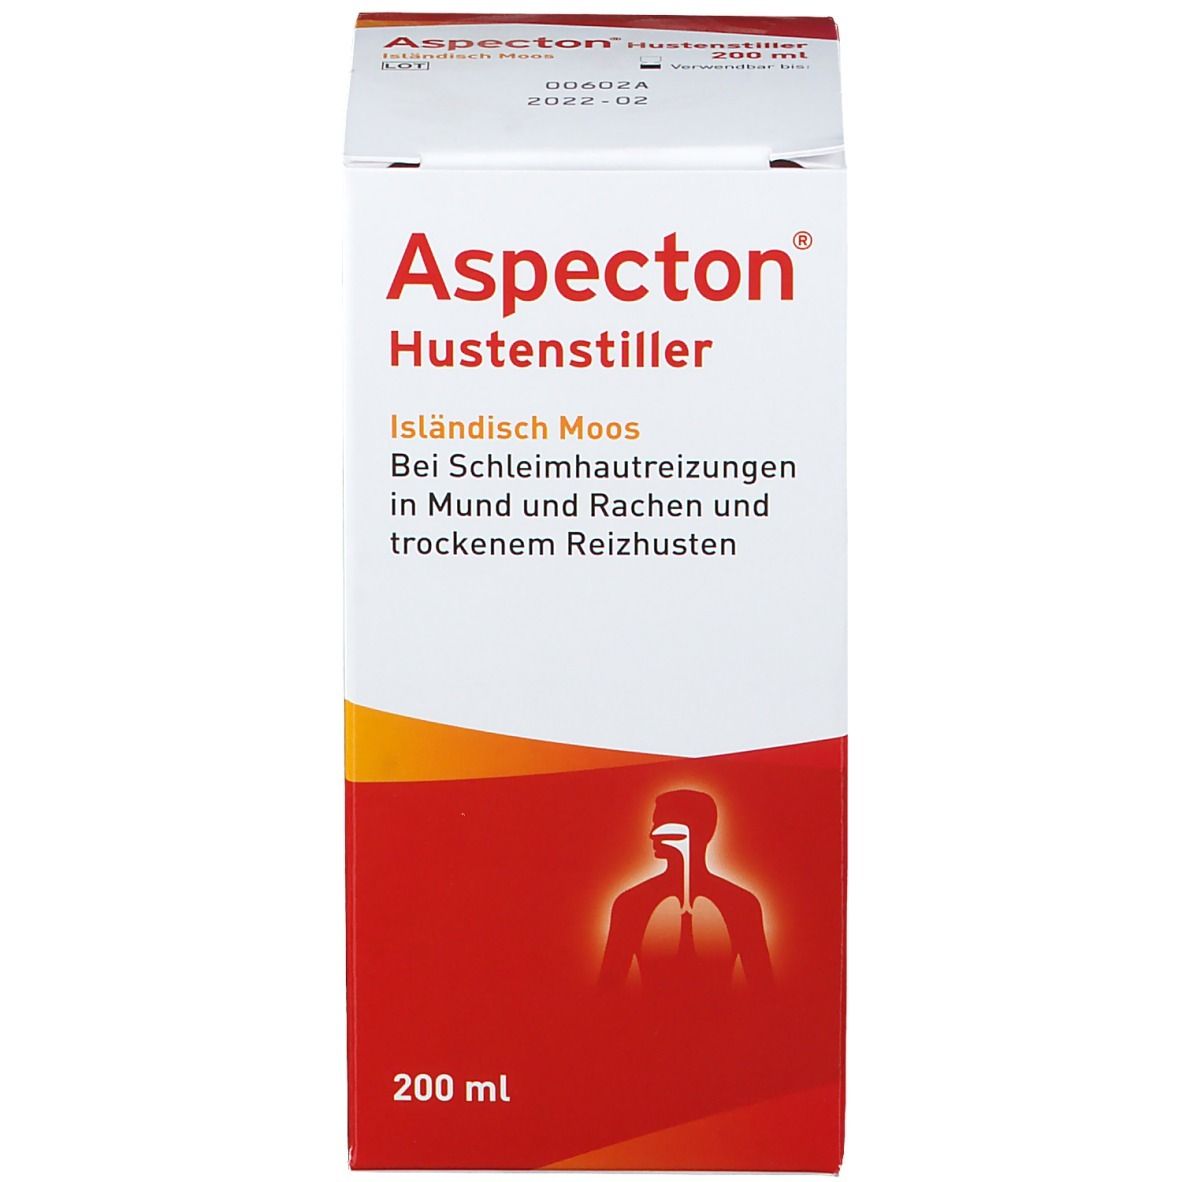 Aspecton® Hustenstiller